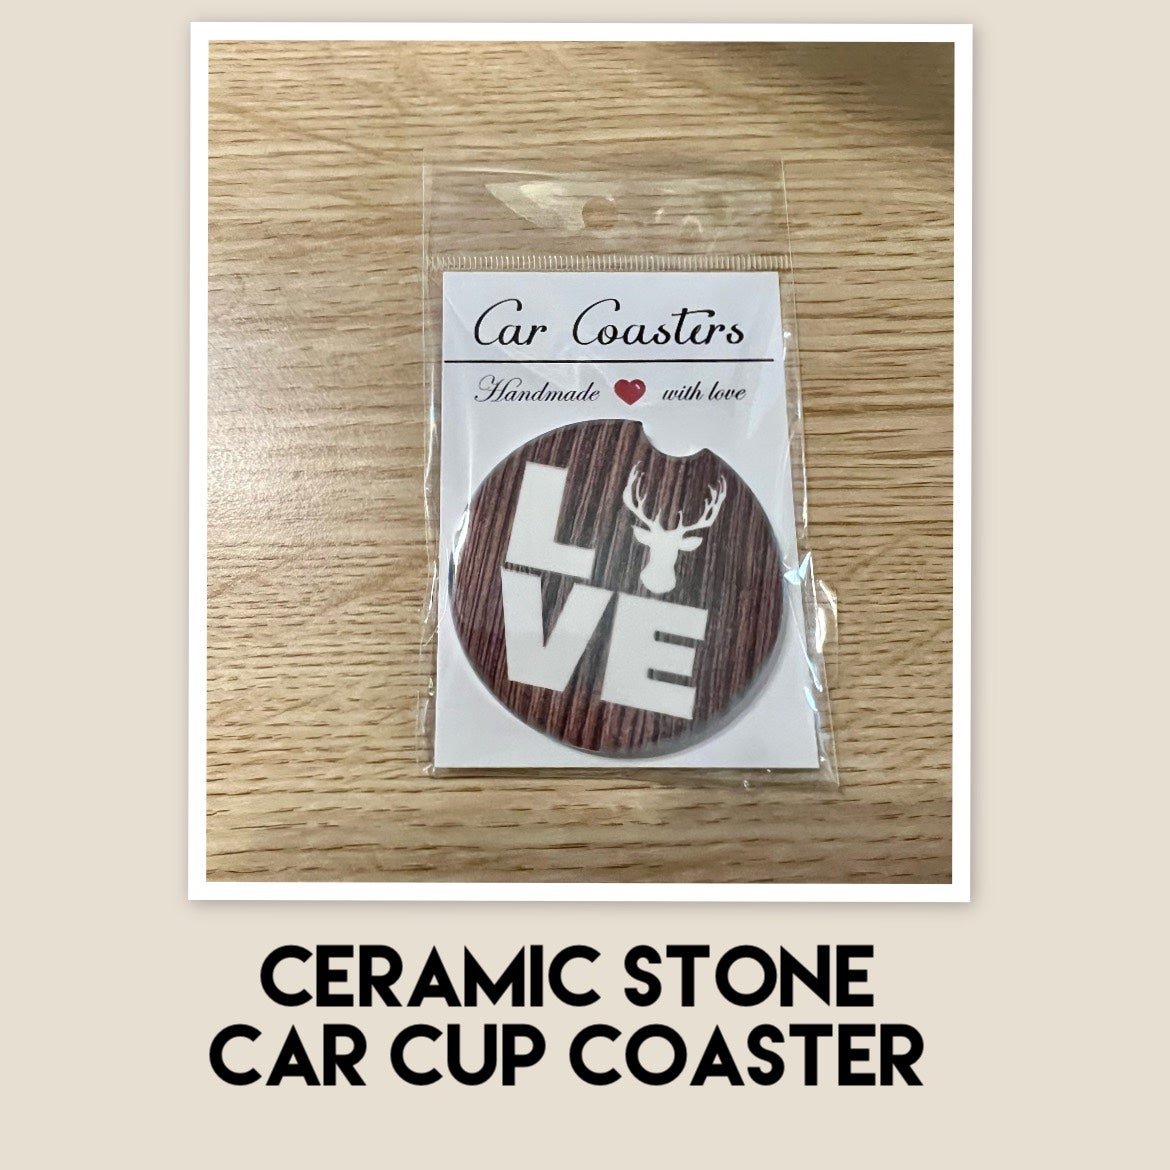 Ceramic Stone Car Cup Coaster 5hyFIWD3K